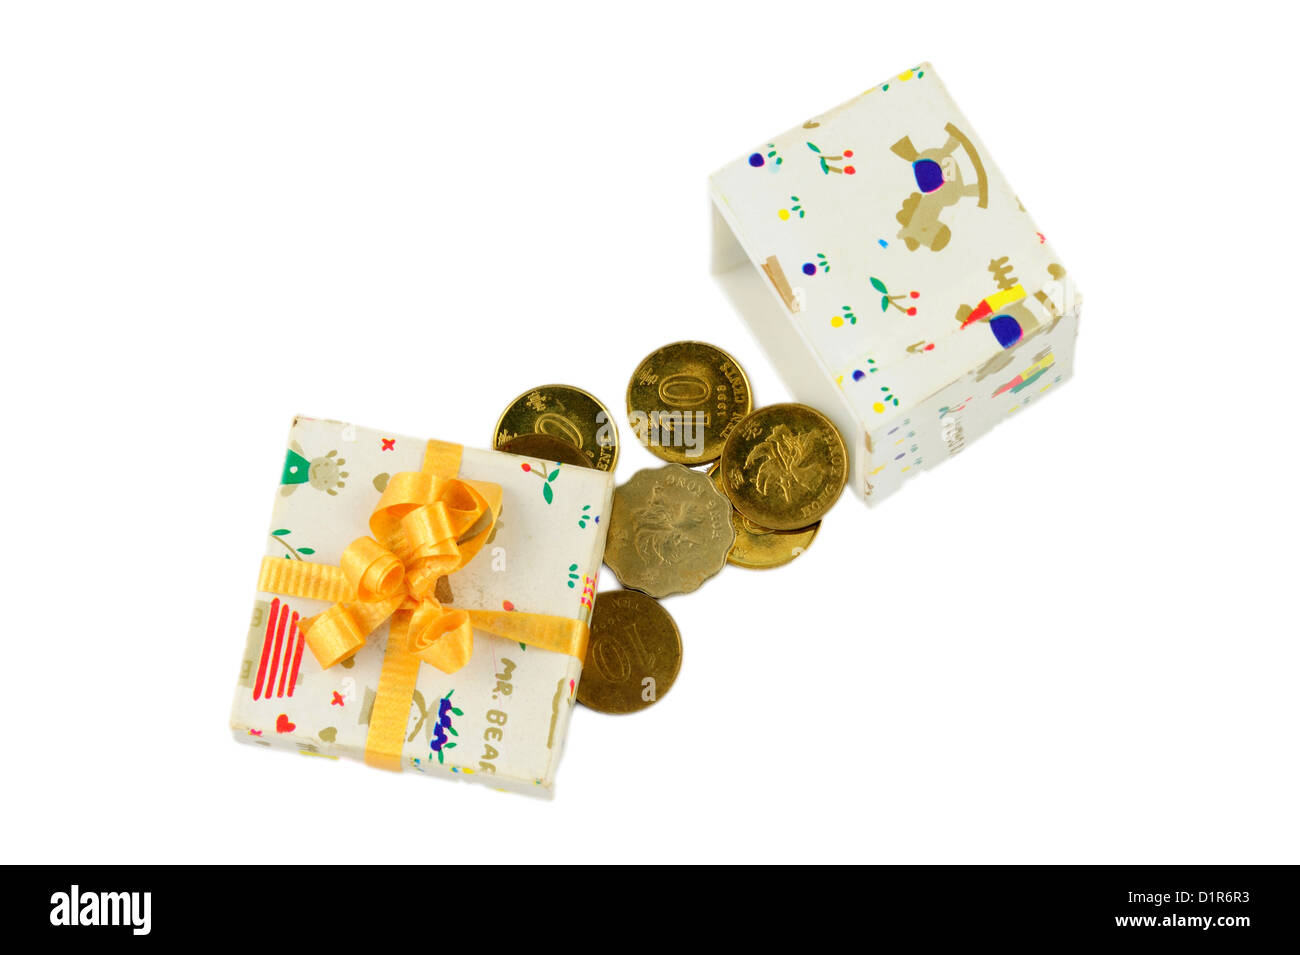 Isolated money gift box on white background. Stock Photo